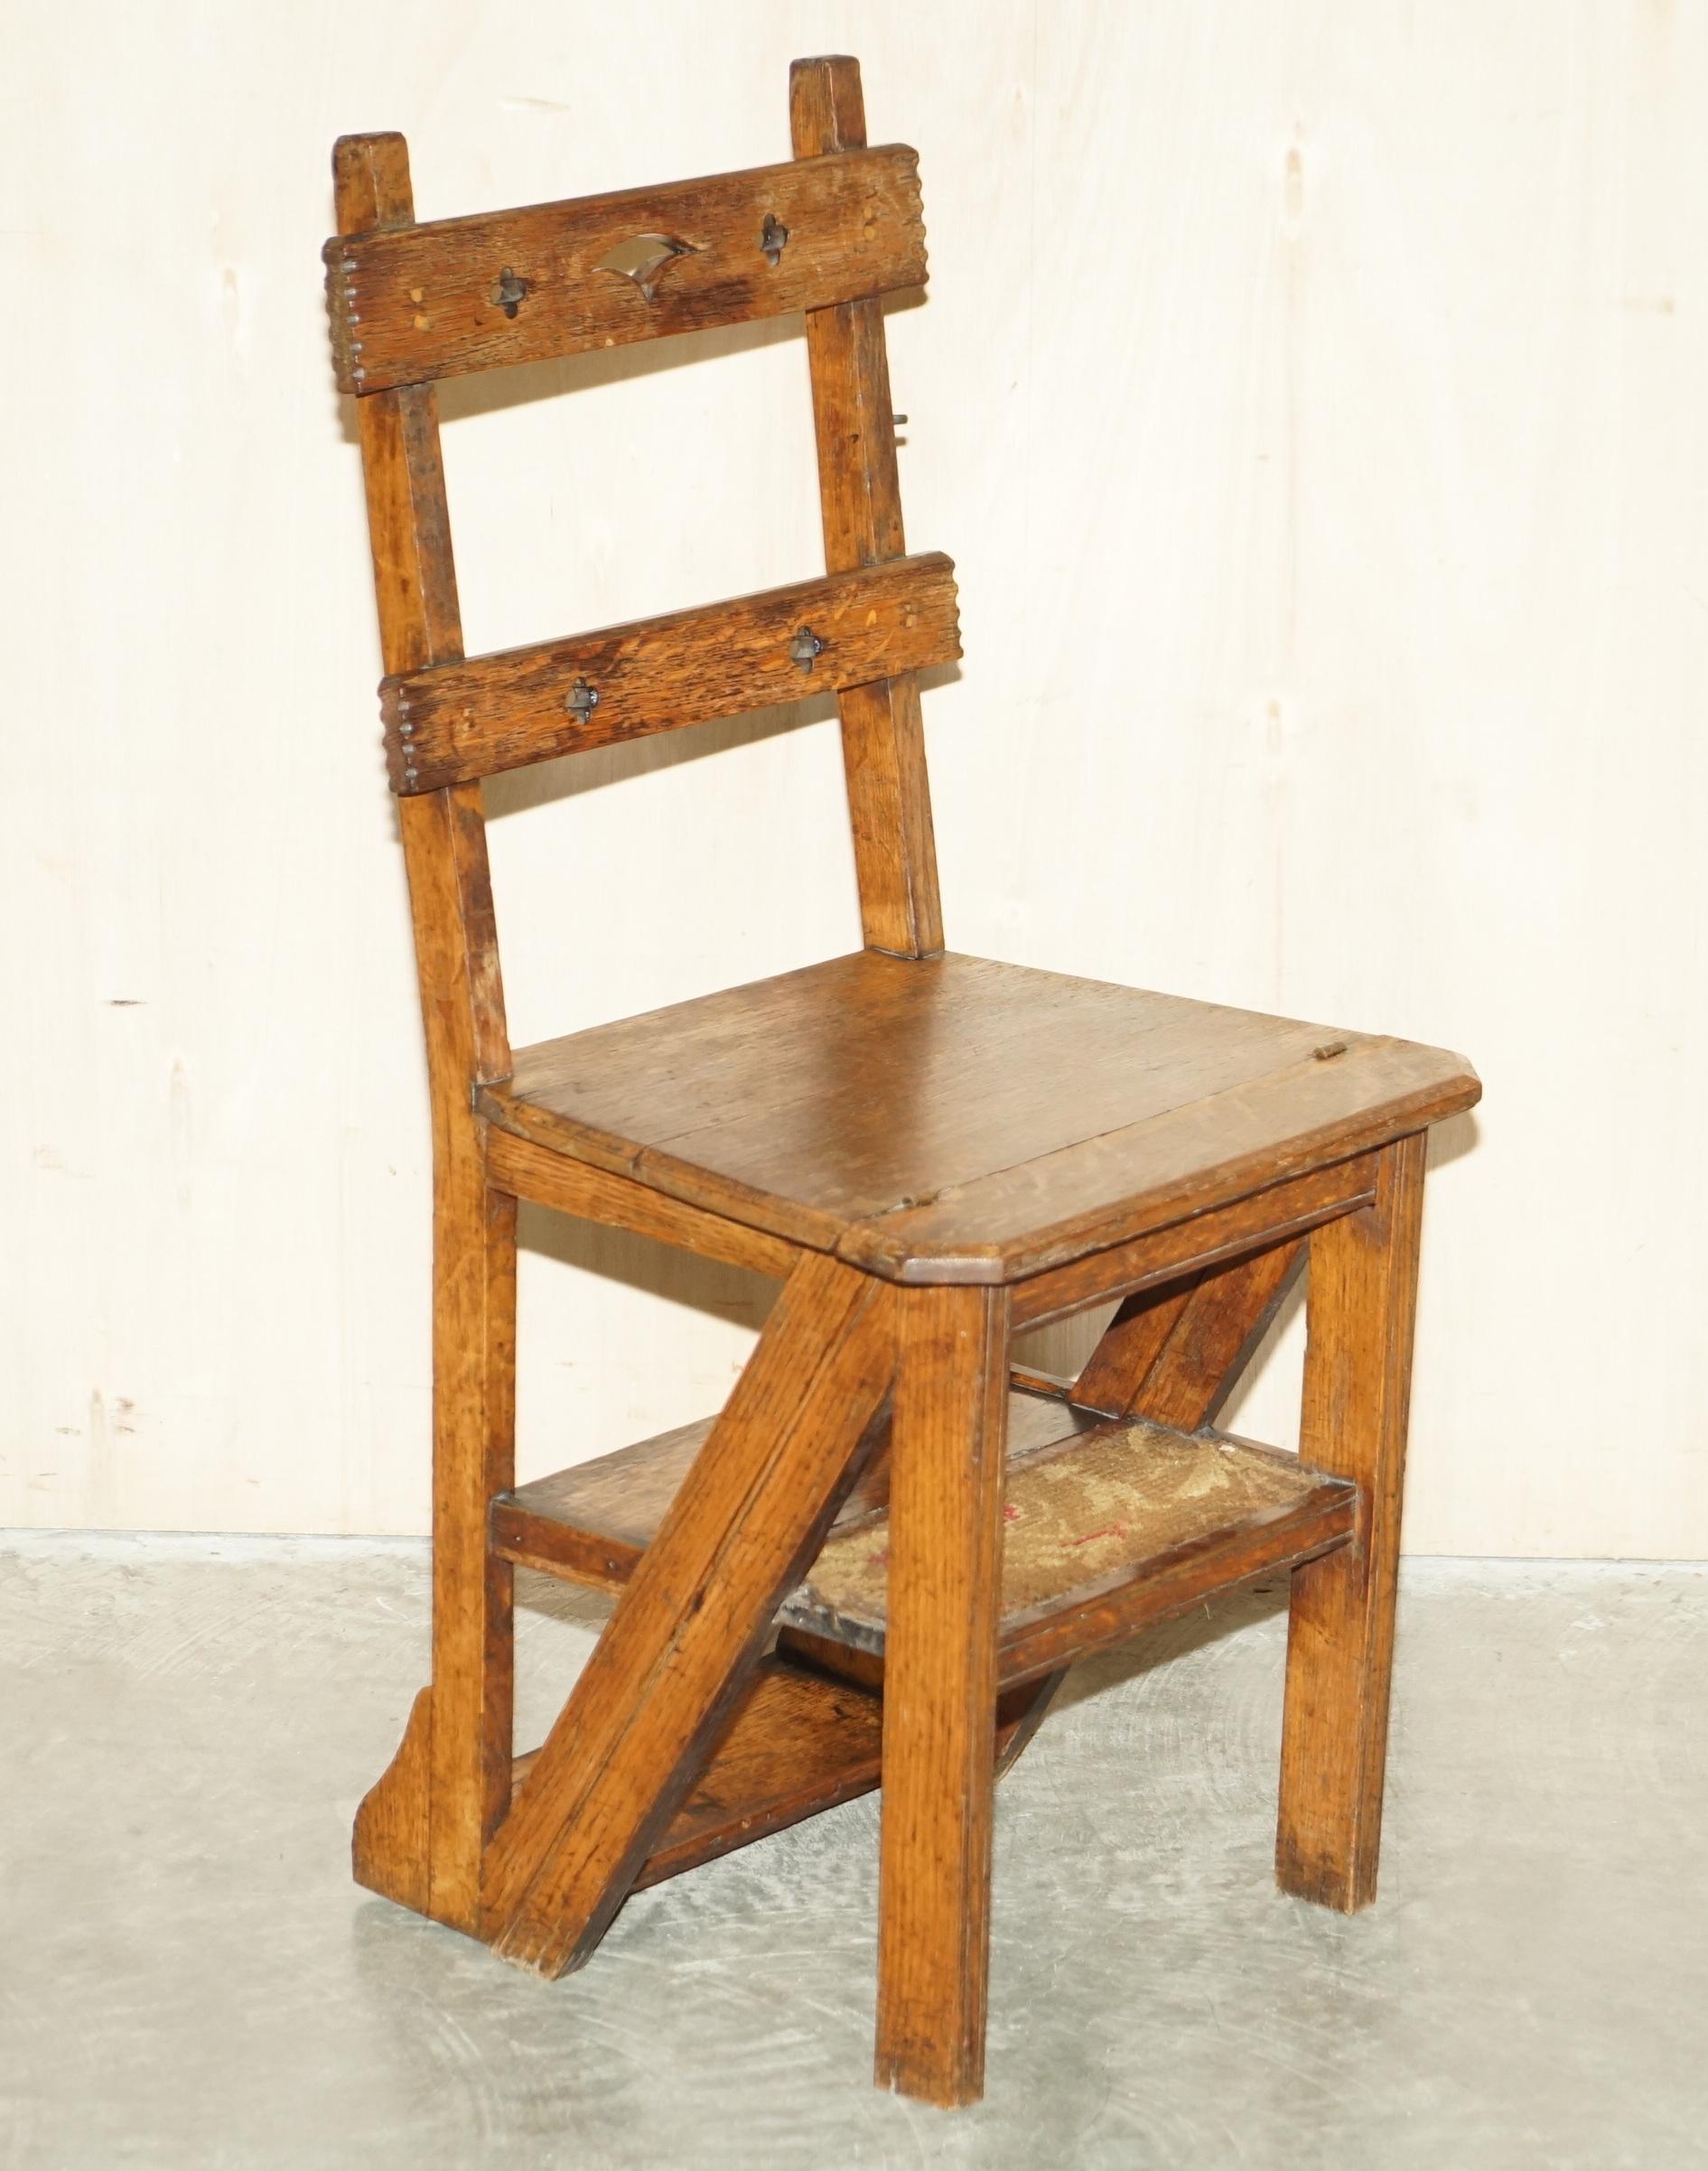 Wir freuen uns, zum Verkauf dieser schönen antiken Arts & Crafts viktorianischen metamorphic Bibliothek Schritte Stuhl in Eiche mit Zeit gepolstert Teppich Schritte bieten 

Ein sehr charmantes Stück mit hohem Sammlerwert, das als